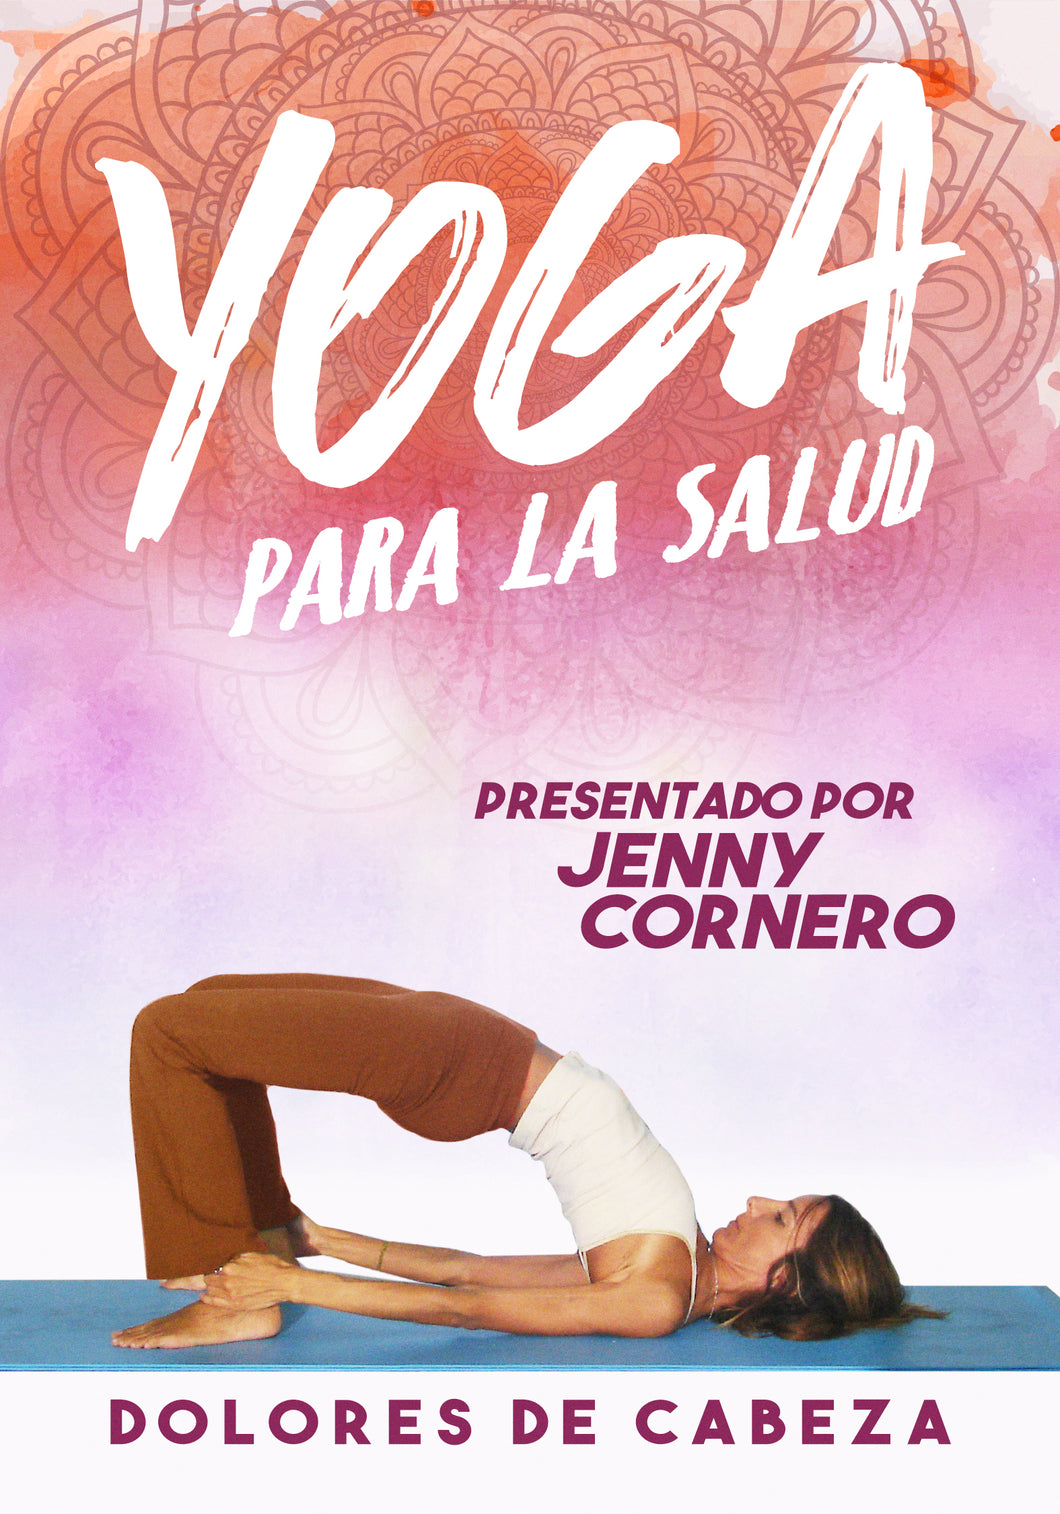 Yoga Para La Salud: Dolores De Cabeza (DVD)